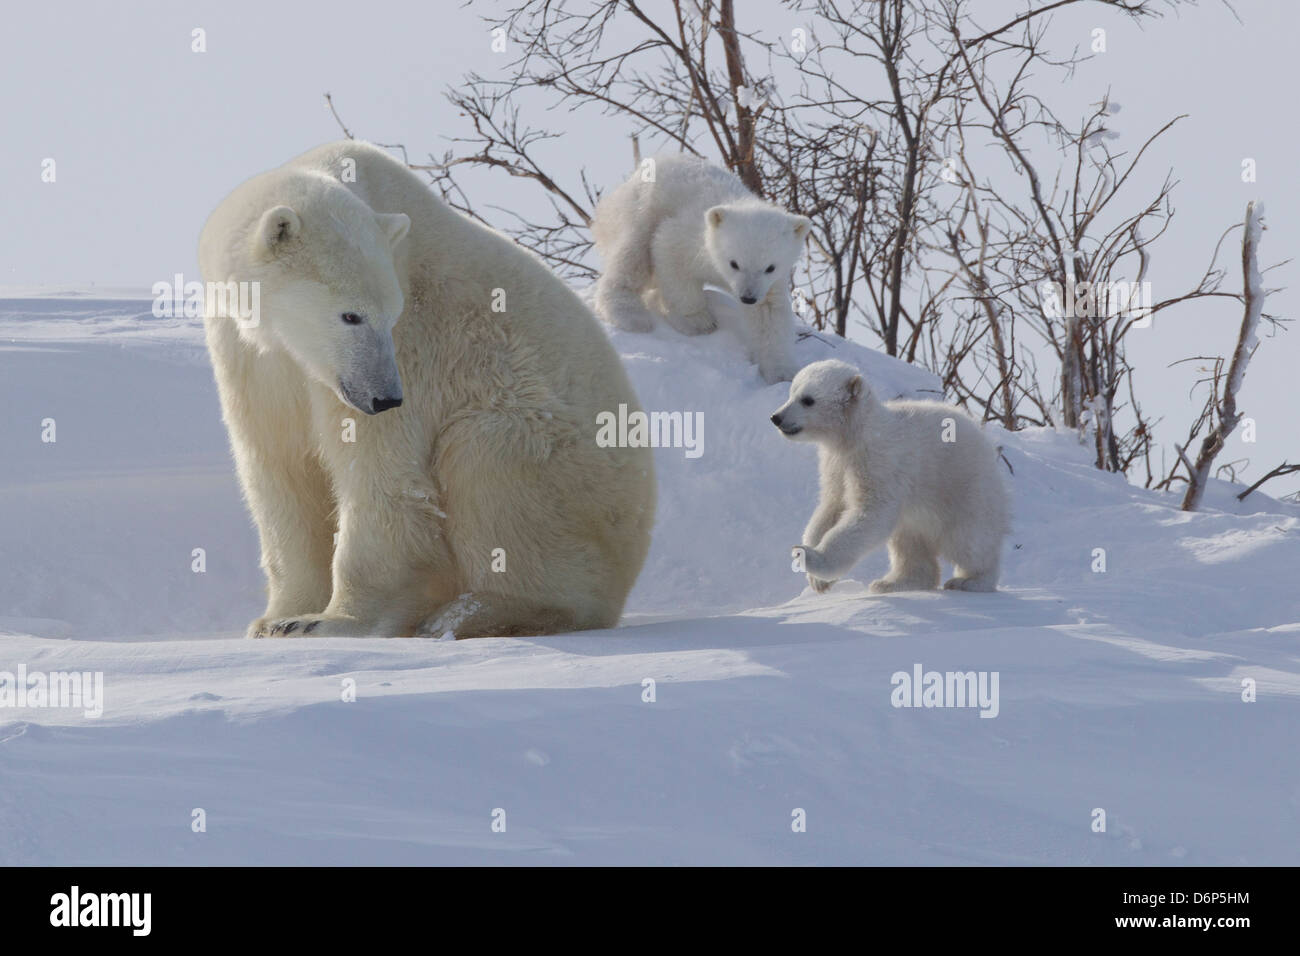 El oso polar (Ursus maritimus) y sus crías, Parque Nacional Wapusk, Churchill, la Bahía de Hudson, Manitoba, Canadá, América del Norte Foto de stock